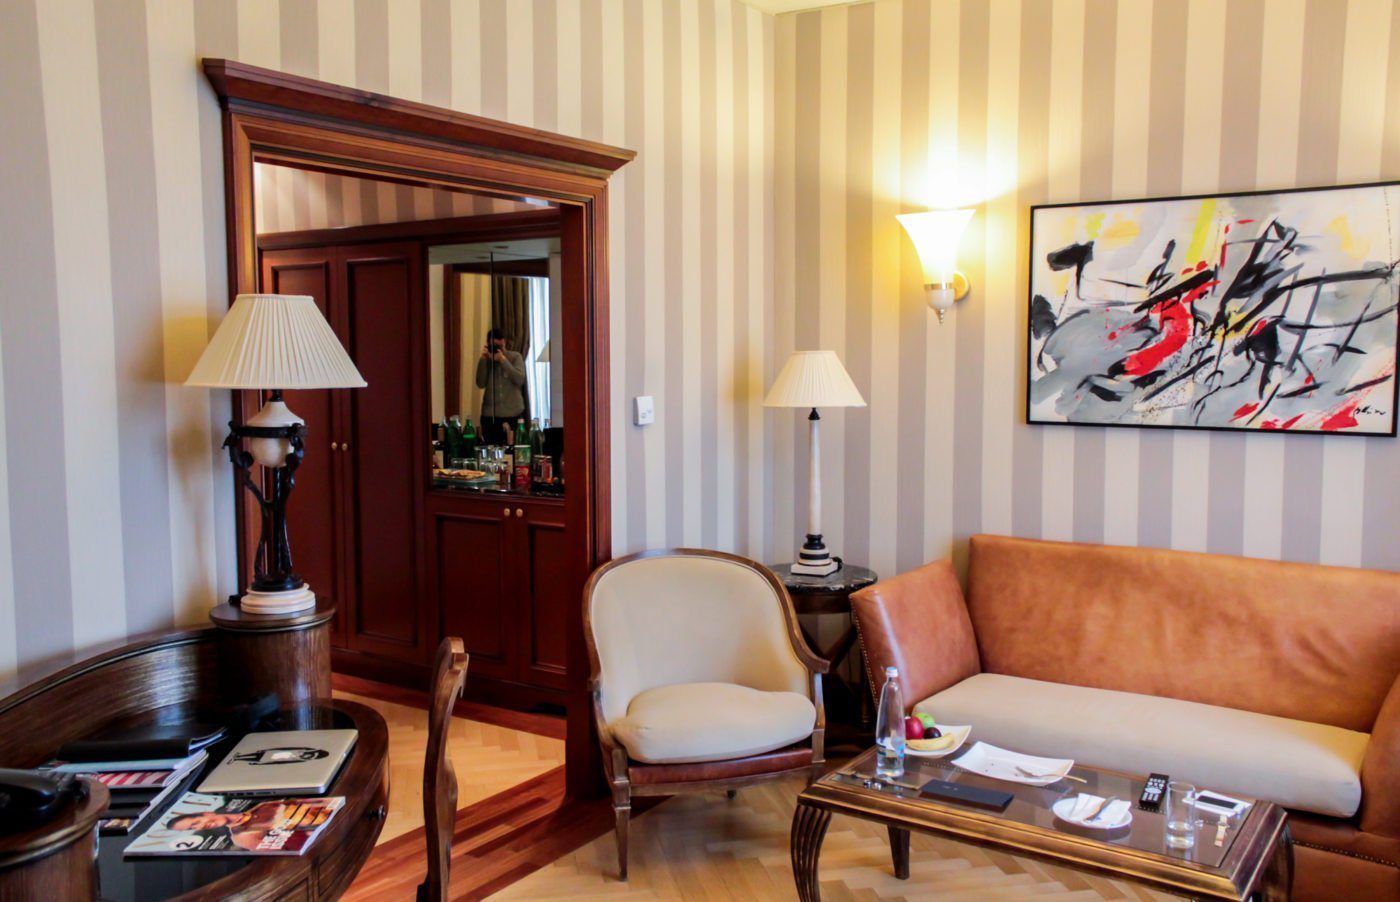 Boscolo Prague: hotel review 19